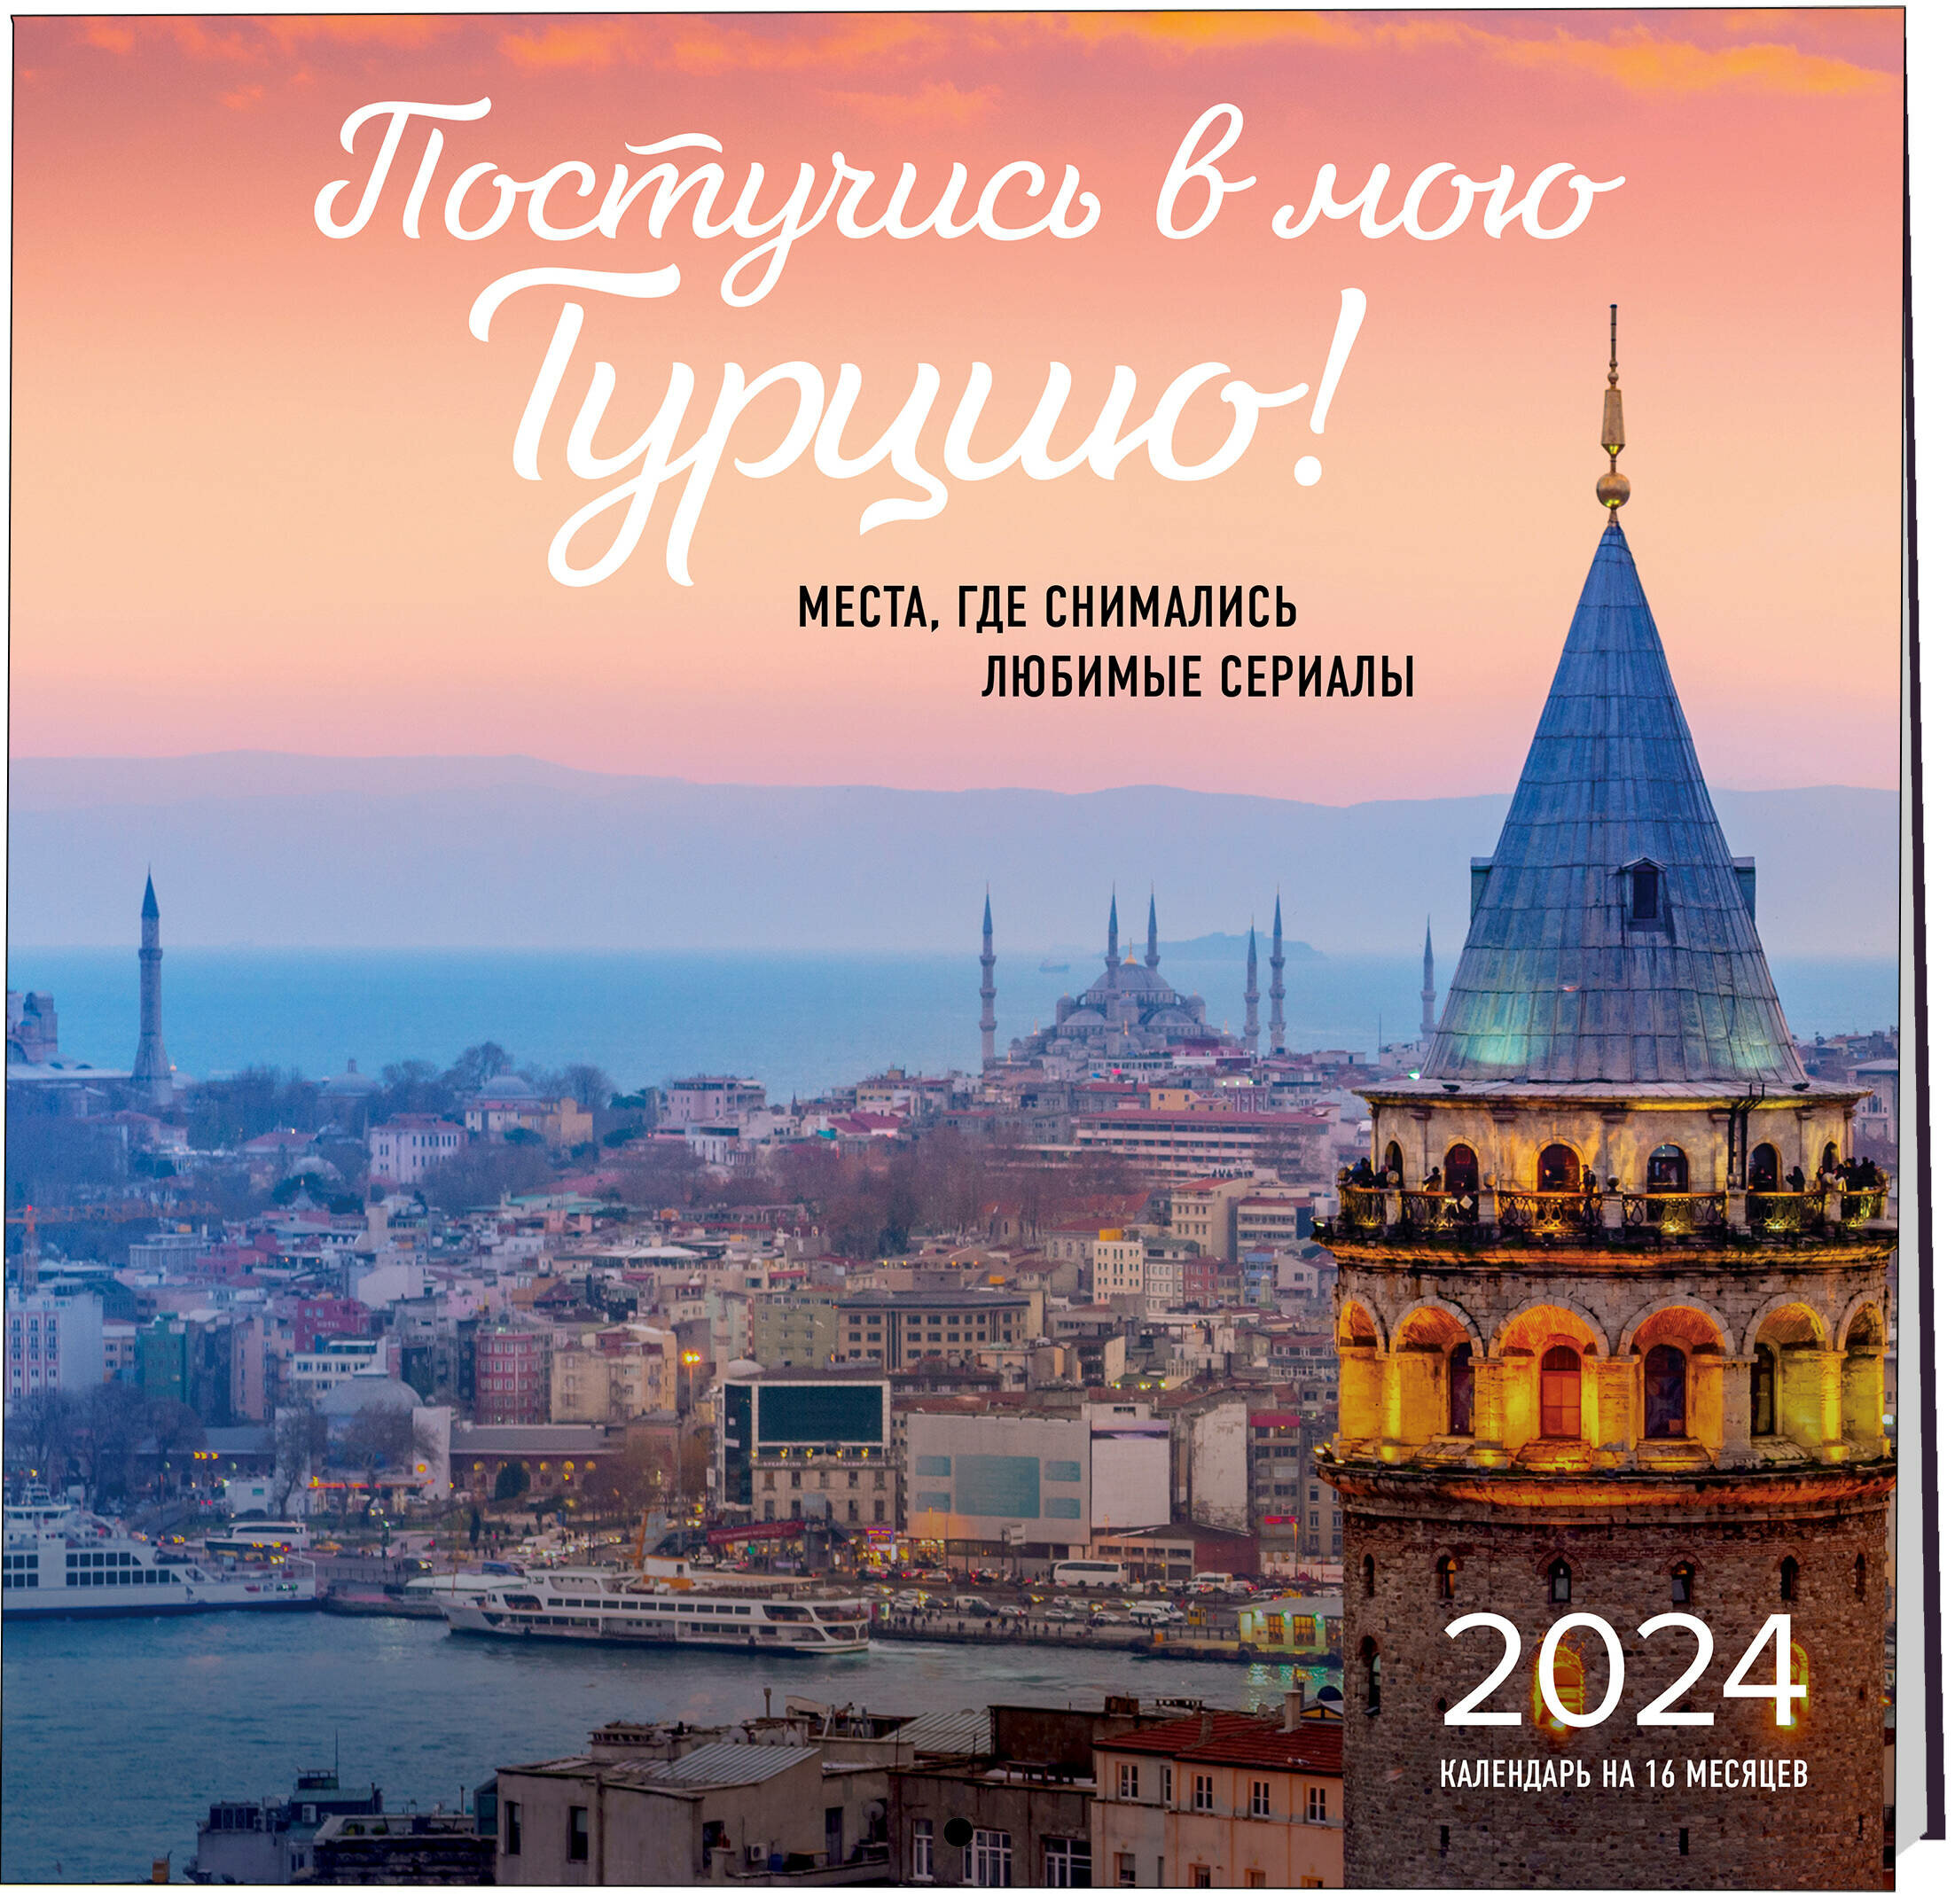 Постучись в мою Турцию! Места, где снимались любимые сериалы. Календарь настенный на 16 месяцев на 2024 год (300х300 мм)